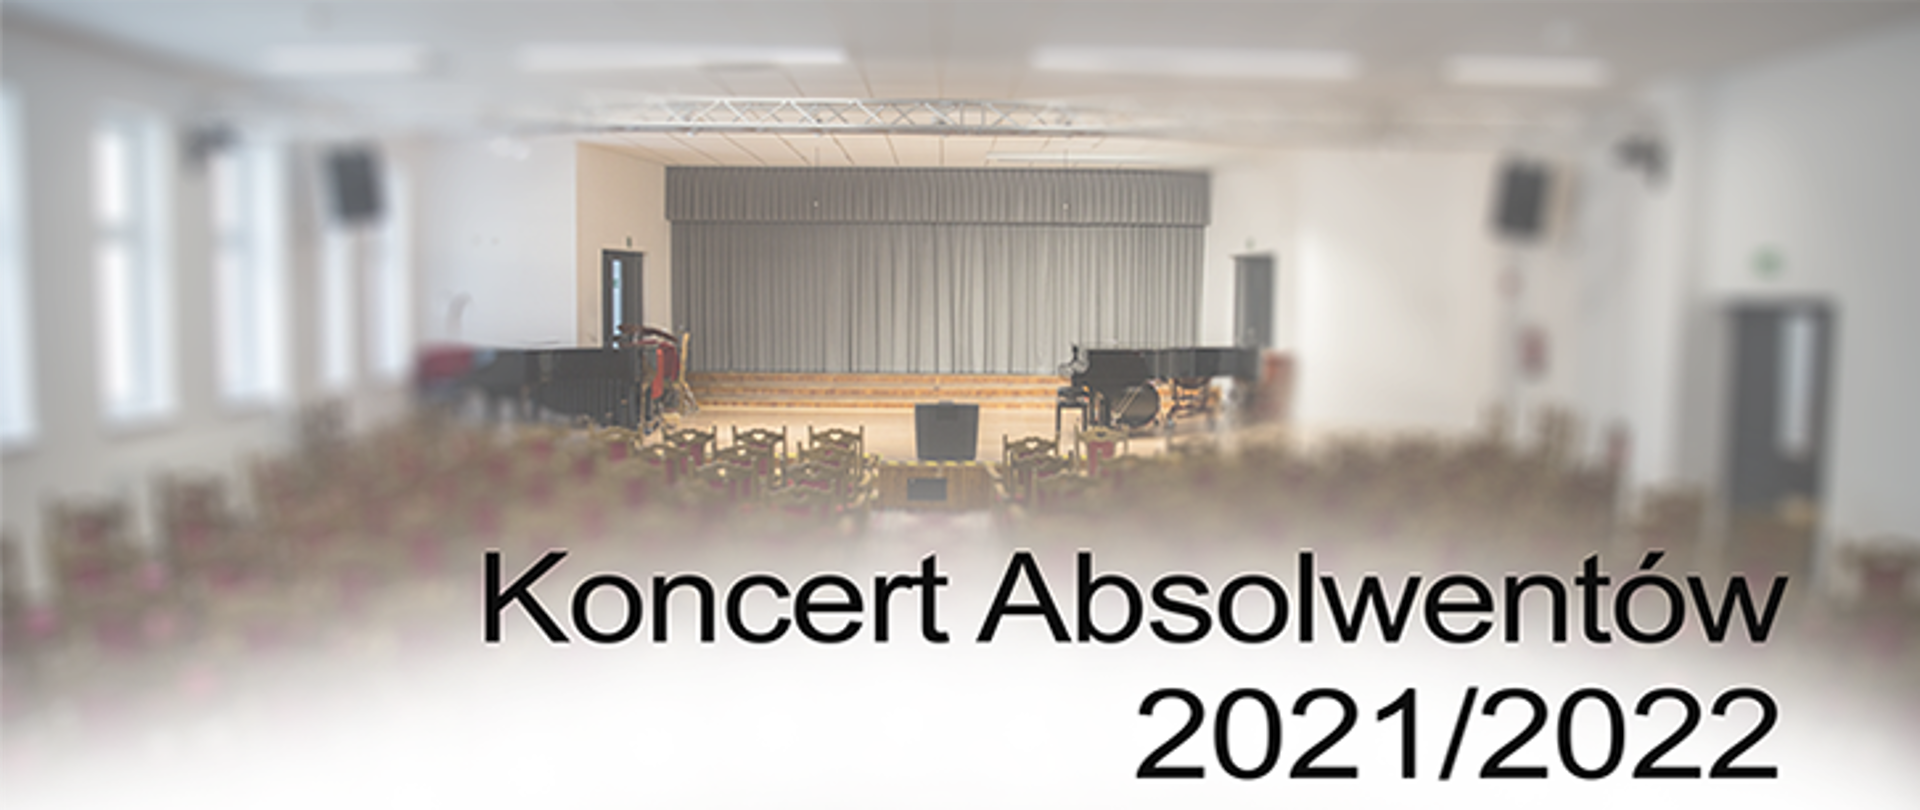 Sala koncertowa, widok sceny, po obu stronach sceny dwa fortepiany, udołu zdjęcia po prawej stronie napis "Koncert absolwentów 2021/202"